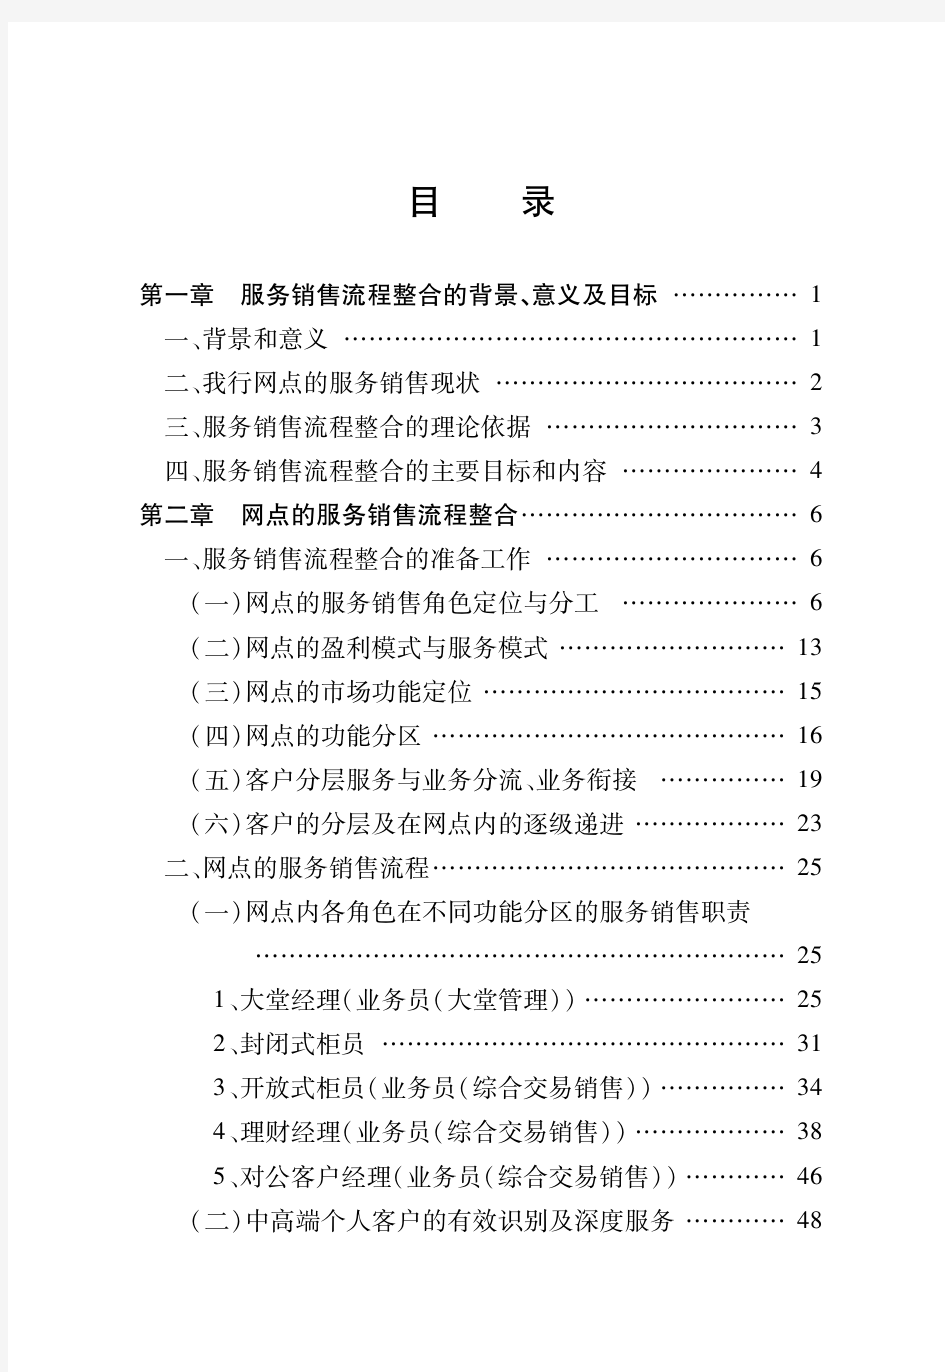 中国银行北京市分行网点服务销售流程手册